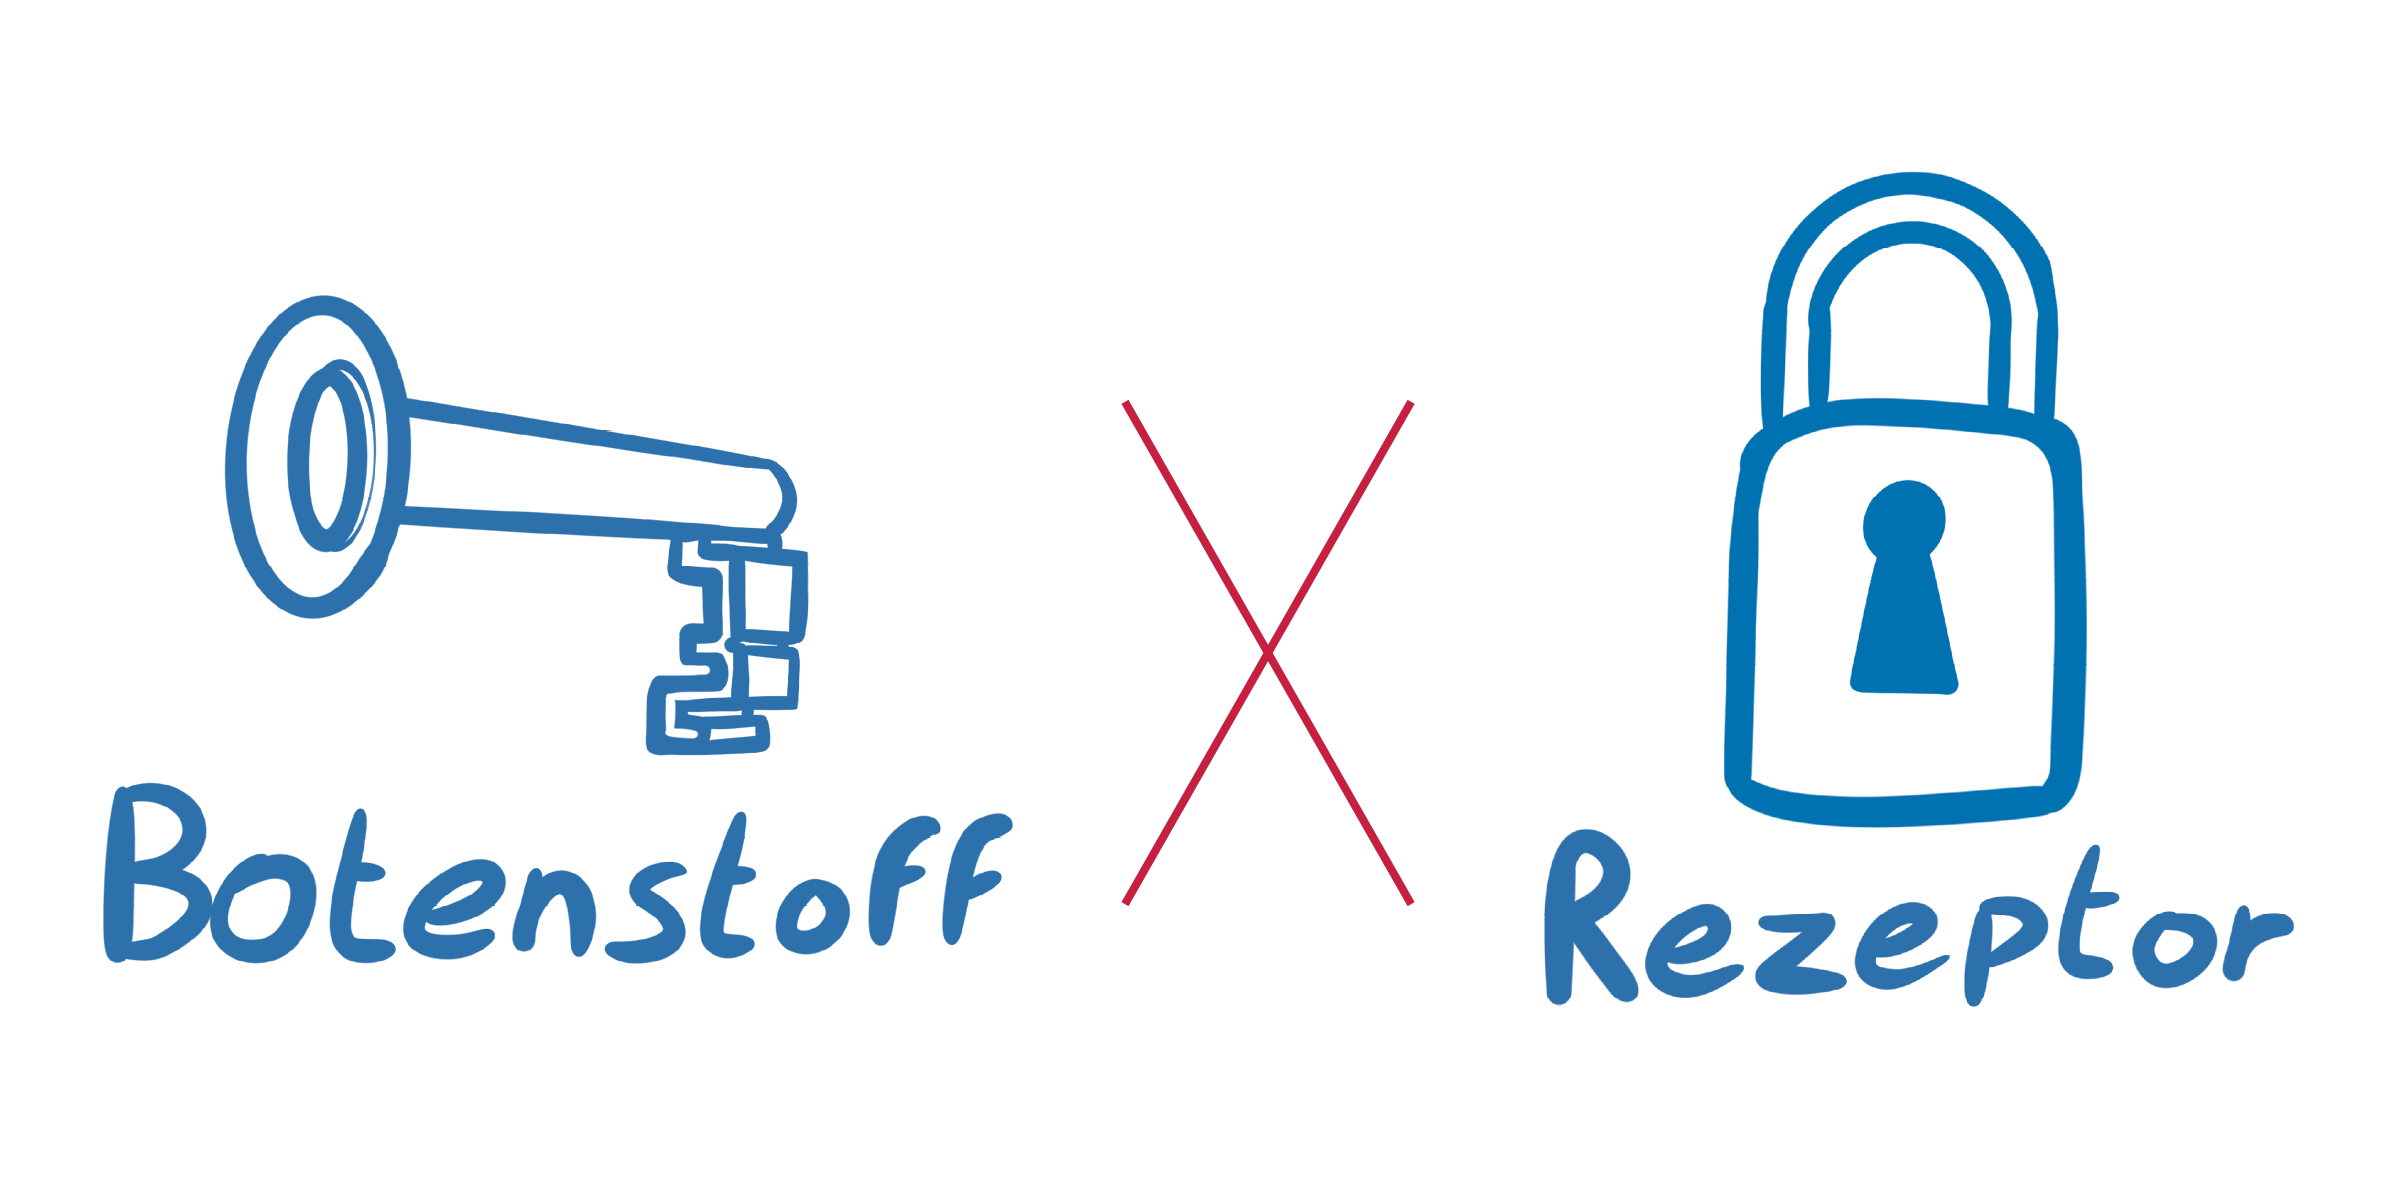 Illustration eines Schlüssels als Symbol für einen Botenstoff und einem Vorhängeschloss als Symbol für den Rezeptor, welche durch ein rotes Kreuz voneinander getrennt sind